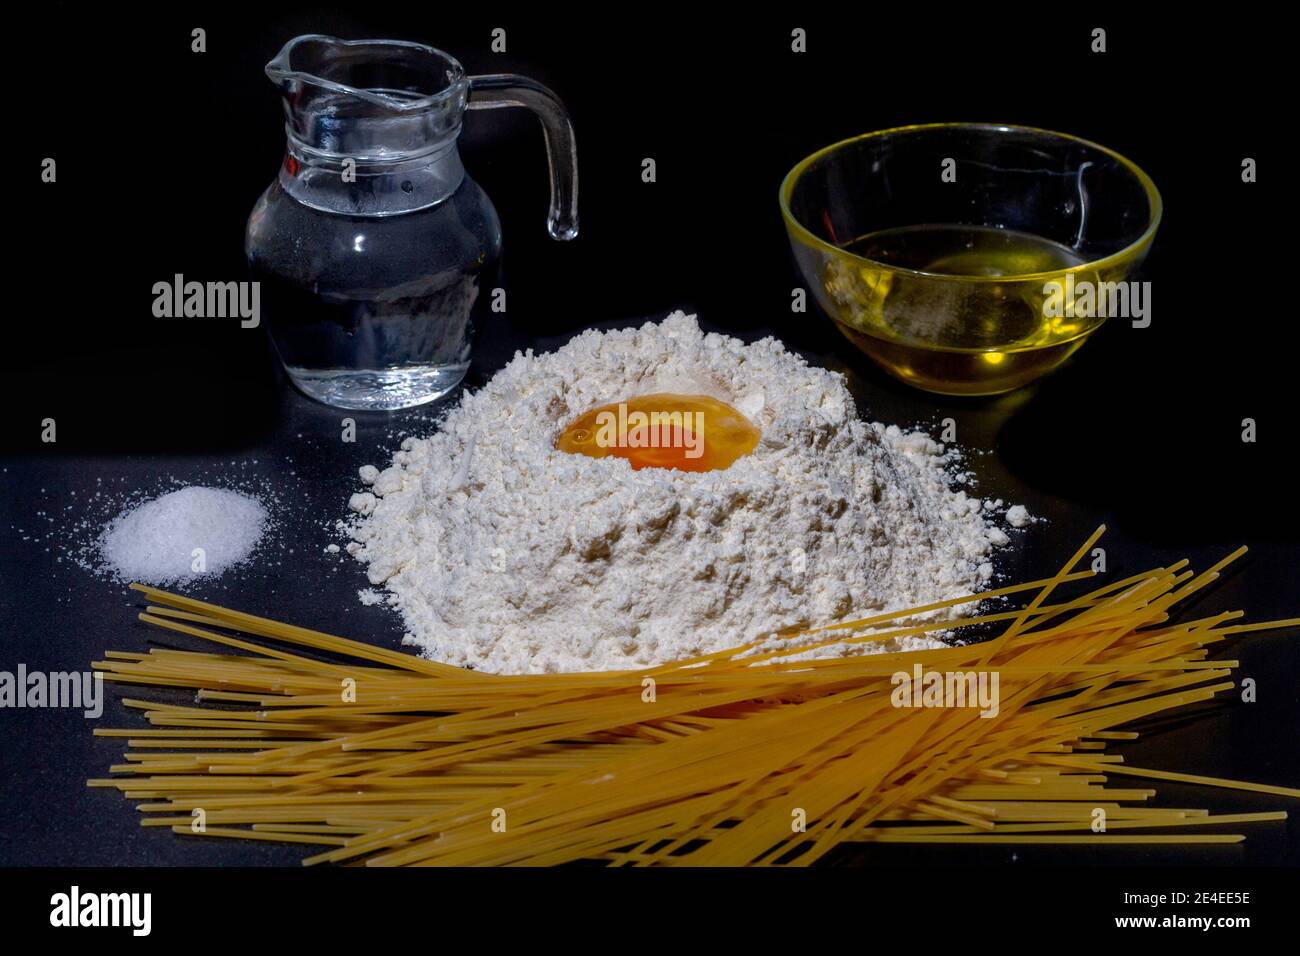 Alle Zutaten, um Spaghetti zu bekommen. Mehl, Ei, Wasser, Olivenöl und Salz, notwendig, um Spaghetti zu machen. Stockfoto